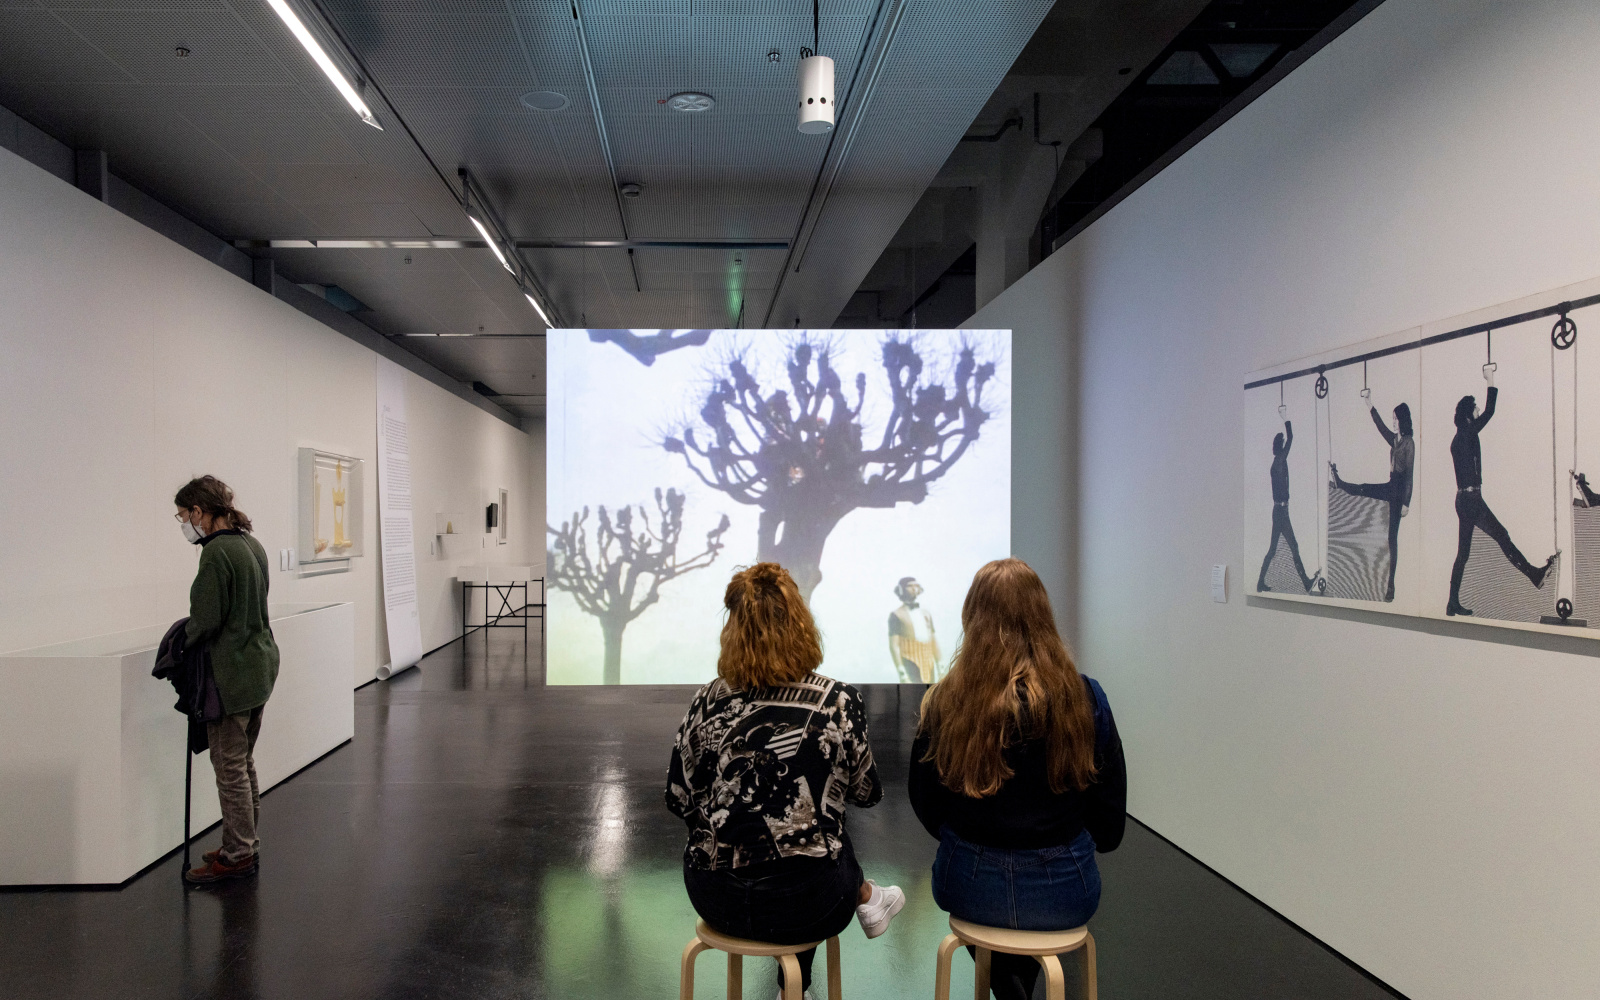 Drei junge Frauen im Ausstellungsraum. Zwei sitzen auf Hockern vor einer Filmleinwand, auf der kahle Bäume zu sehen sind. Recht an der Wand hängt eine abstrakte Zeichnung. Links an der Wand sind Kästen, in die die dritte Frau schaut.